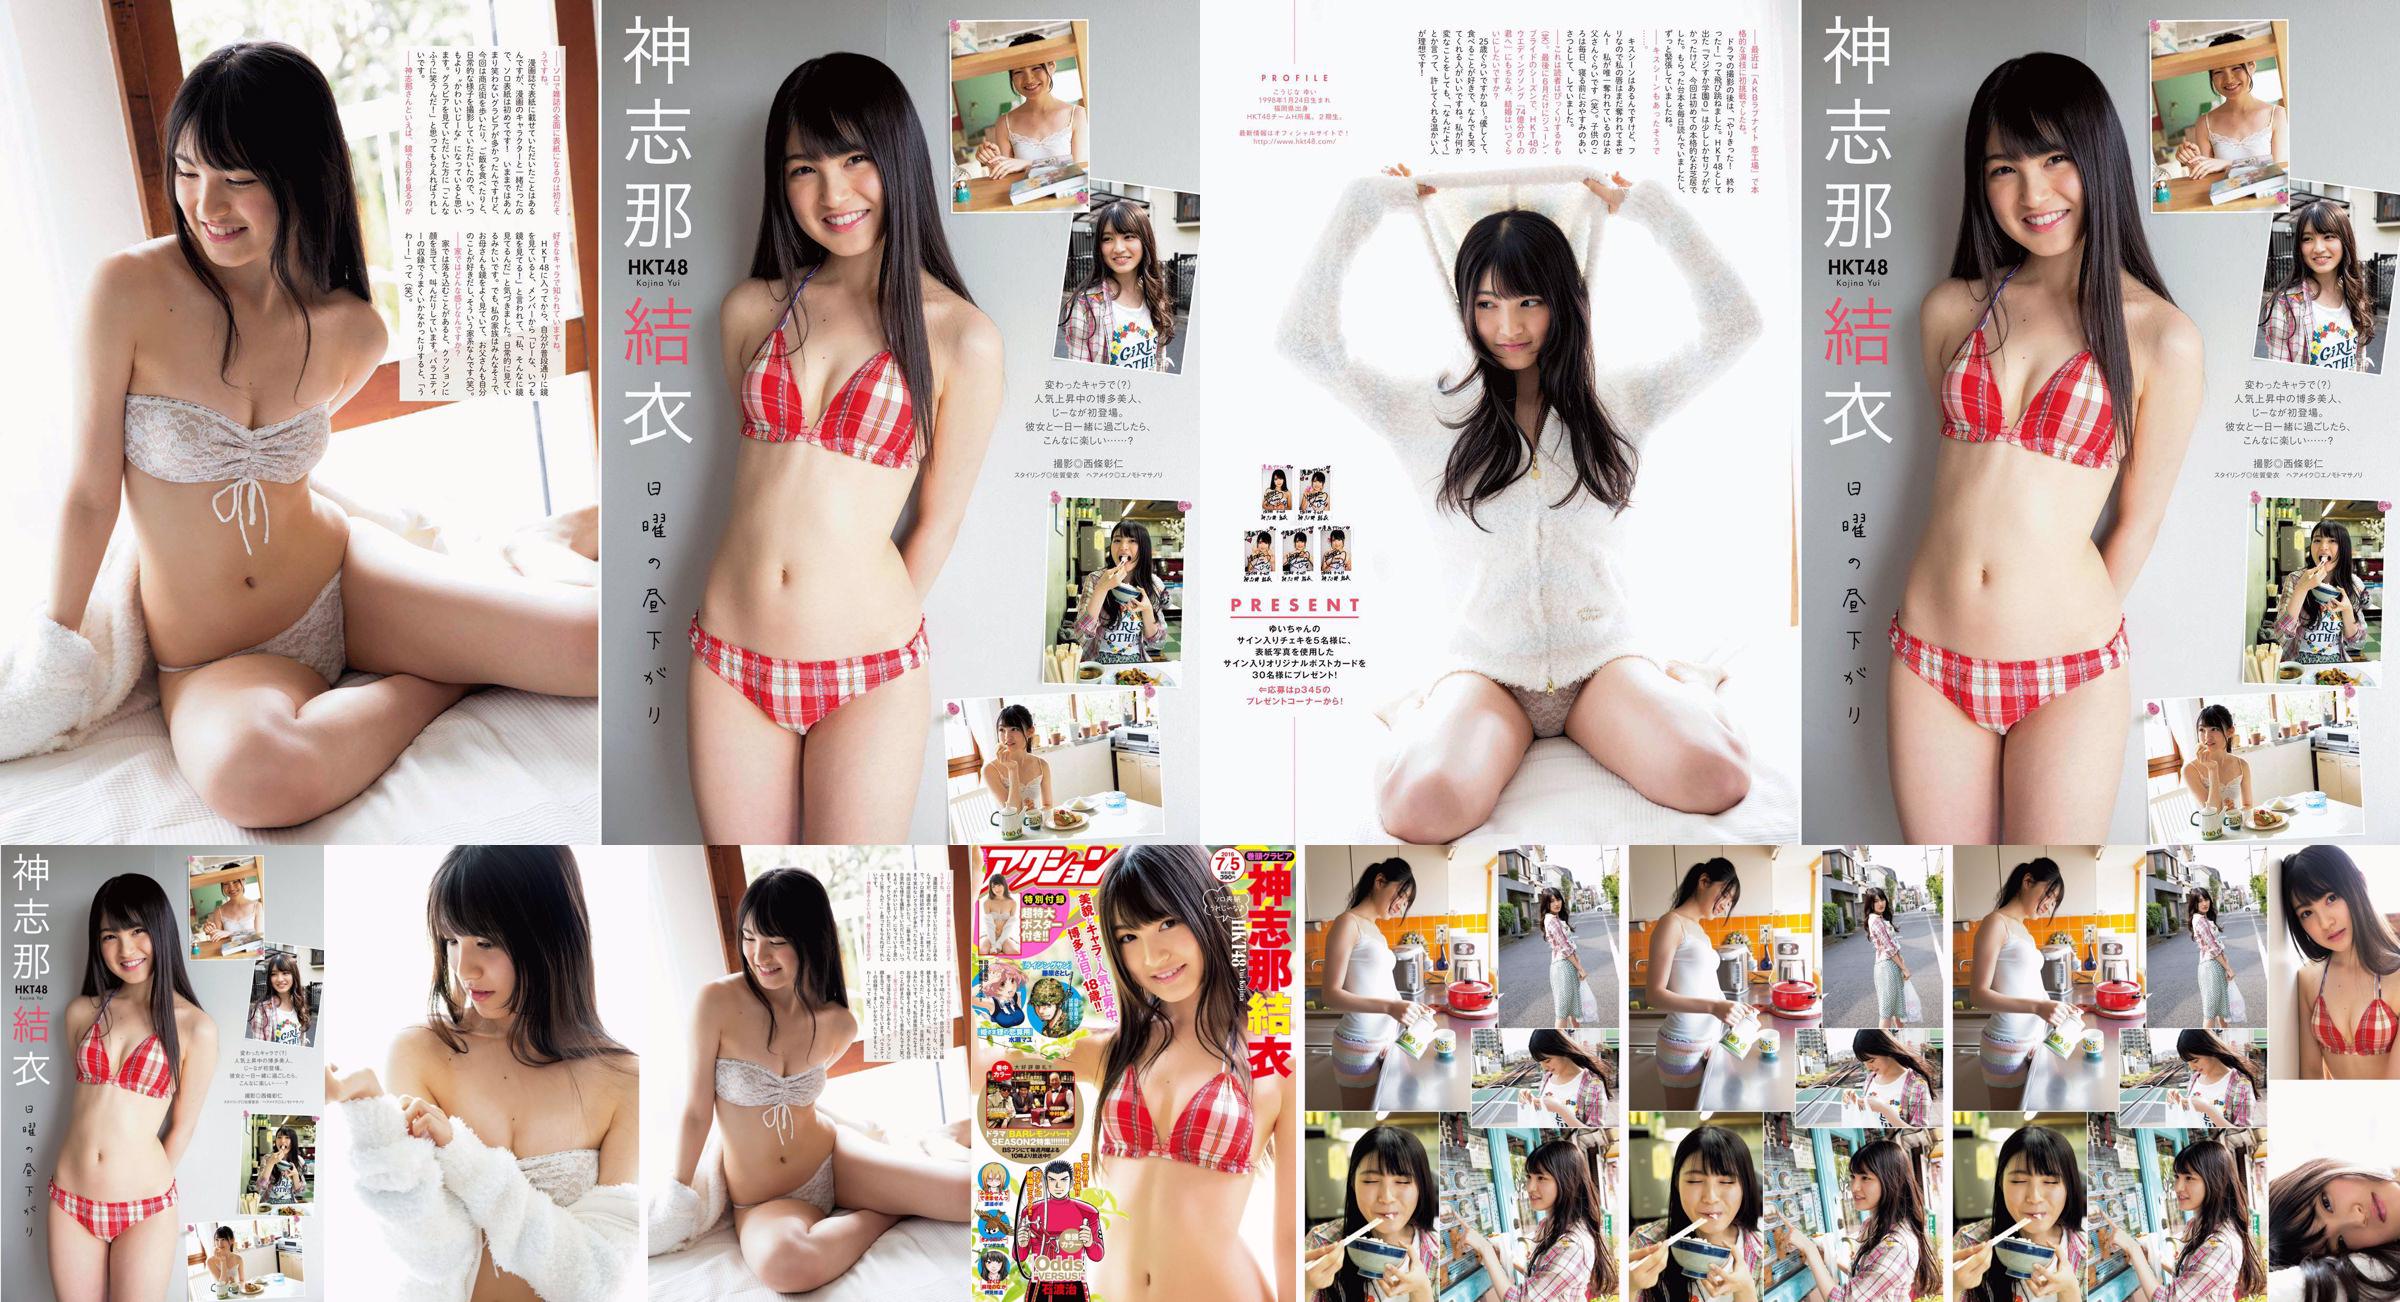 [Manga Action] Shinshina Yui 2016 No.13 Photo Magazine No.fee14b Page 1